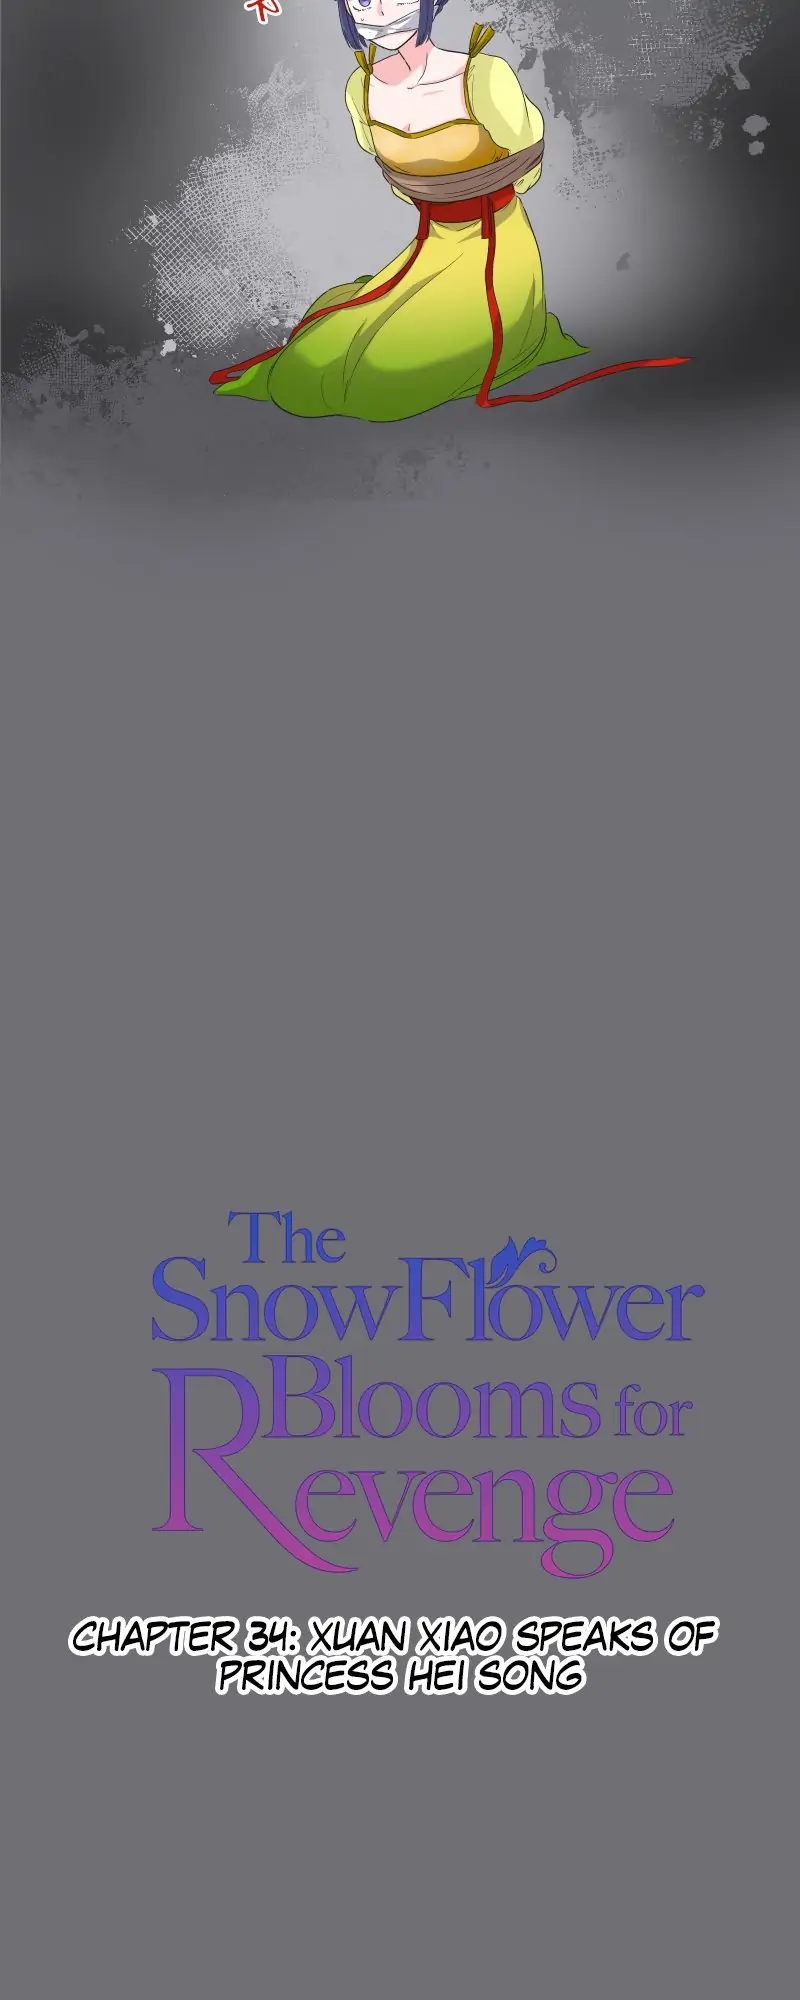 The Snowflower Blooms for Revenge chapter 34